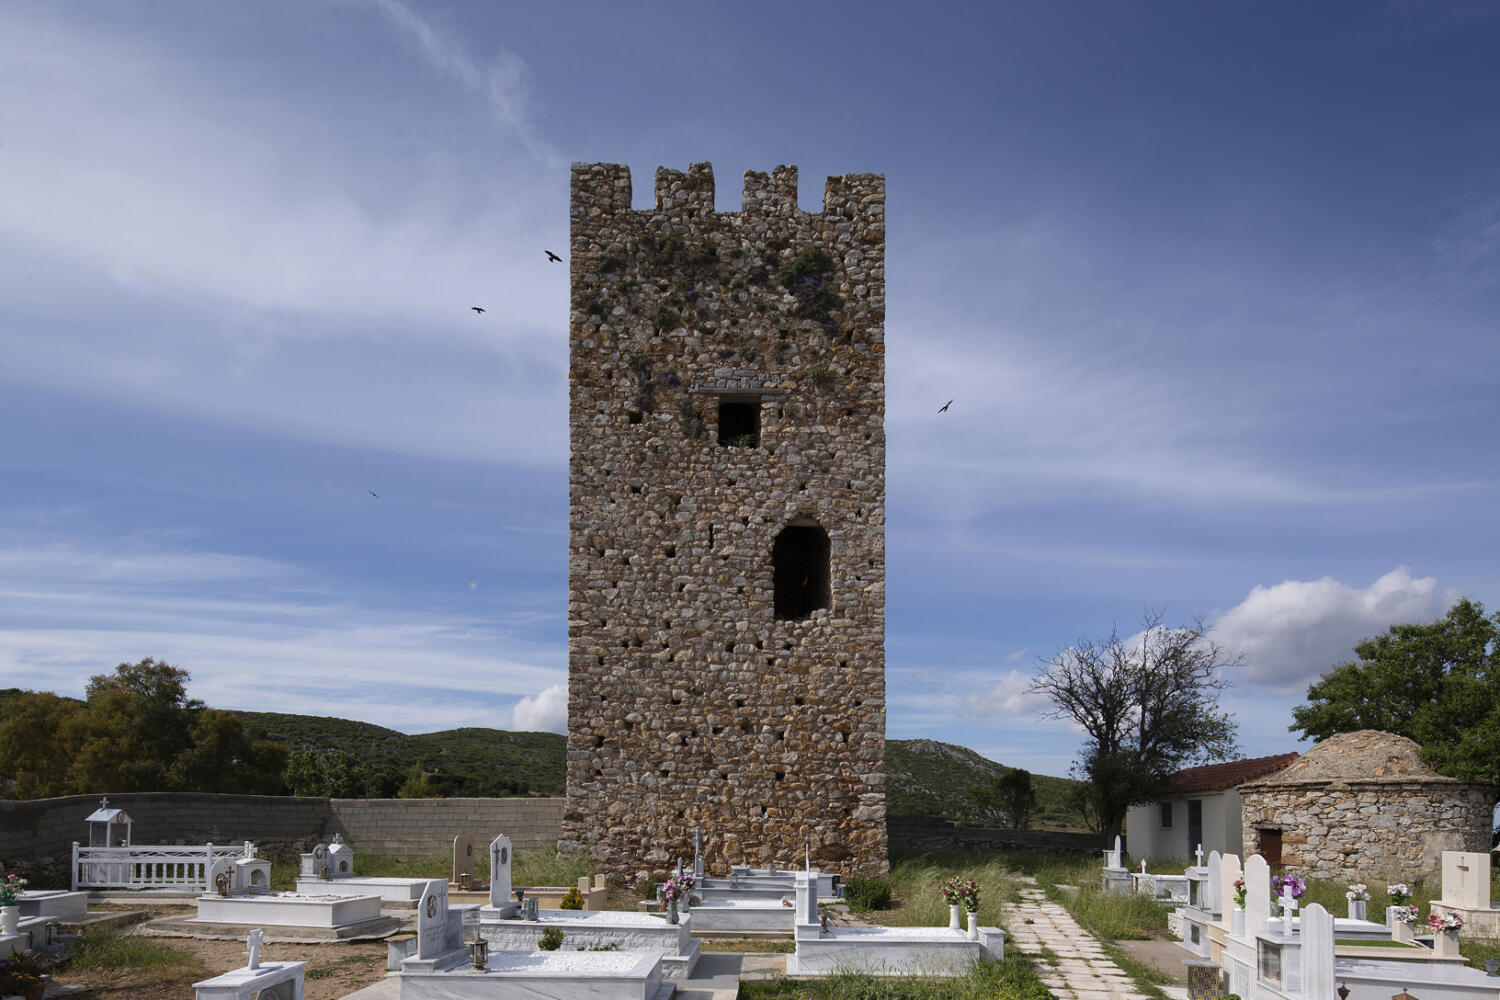 Μεσαιωνικός πύργος, χωριό Τραχήλι. Φωτογραφία: ©Βασίλης Συκάς, για τον Δήμο Κύμης-Αλιβερίου